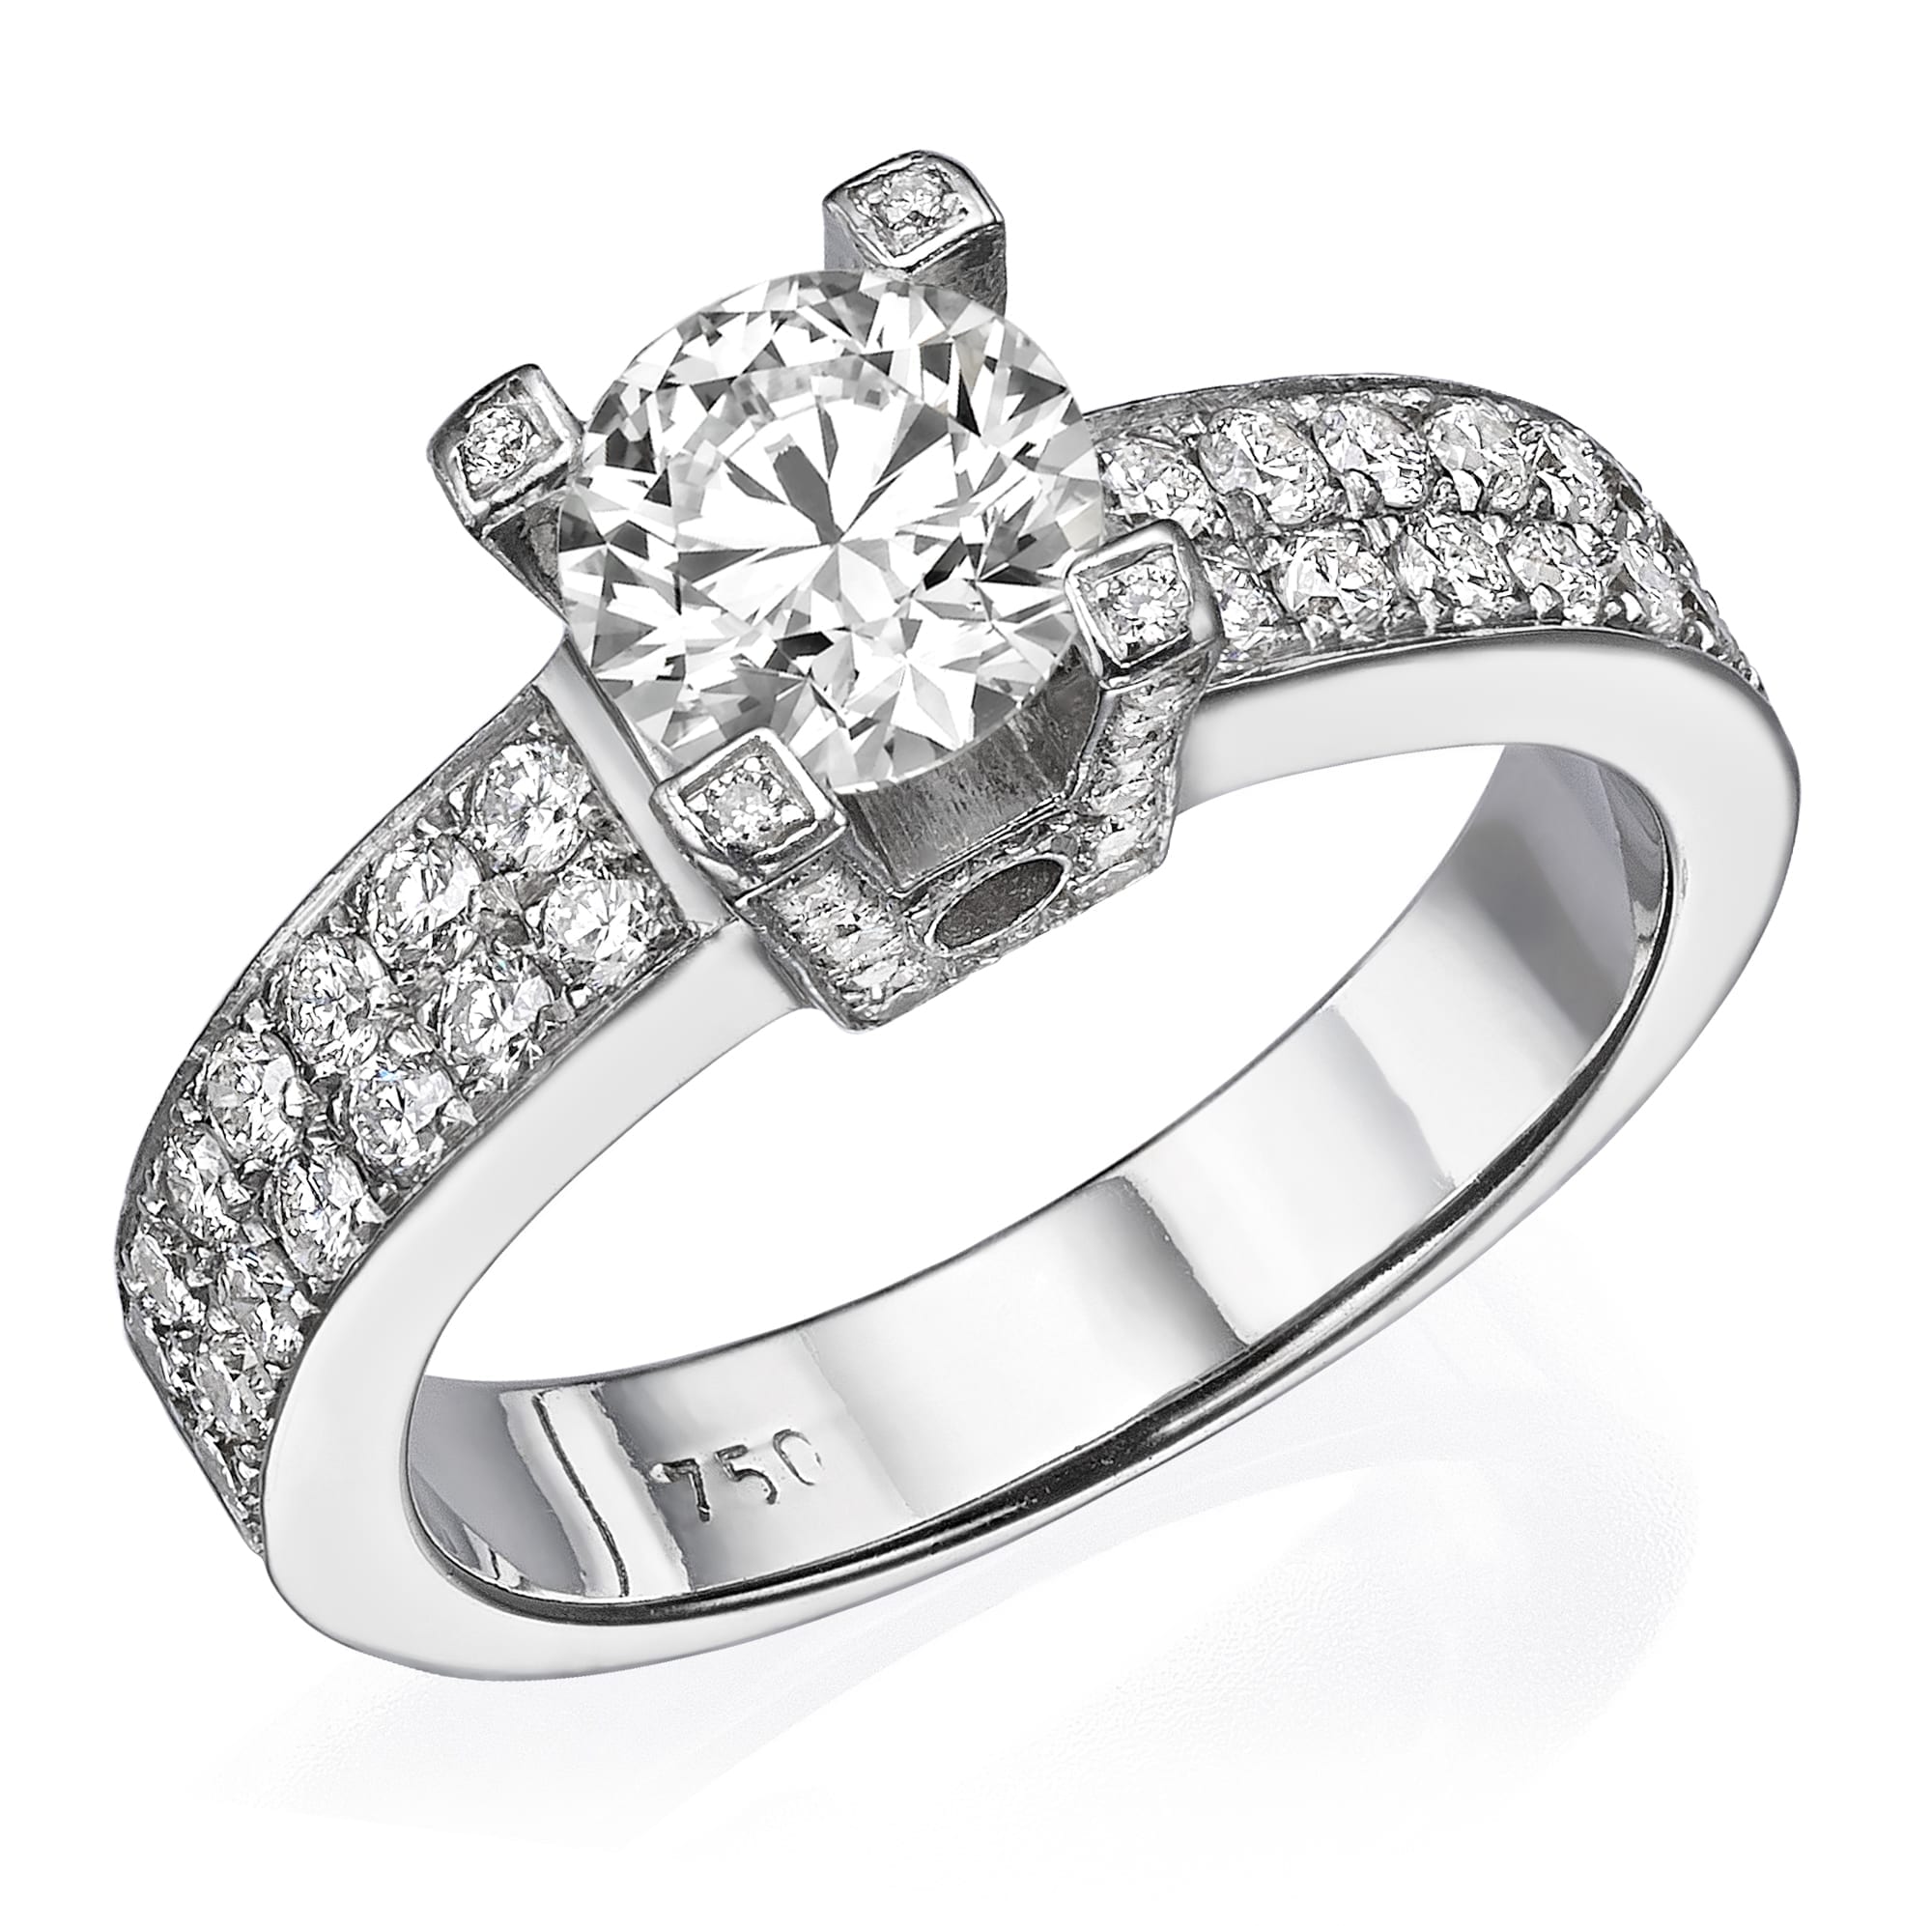 טבעת טבעת יהלומים נוצצת 1.46 קראט עם יהלומים משובצים בפאווה לאורך הרצועה, מציגה אלגנטיות ויוקרה.